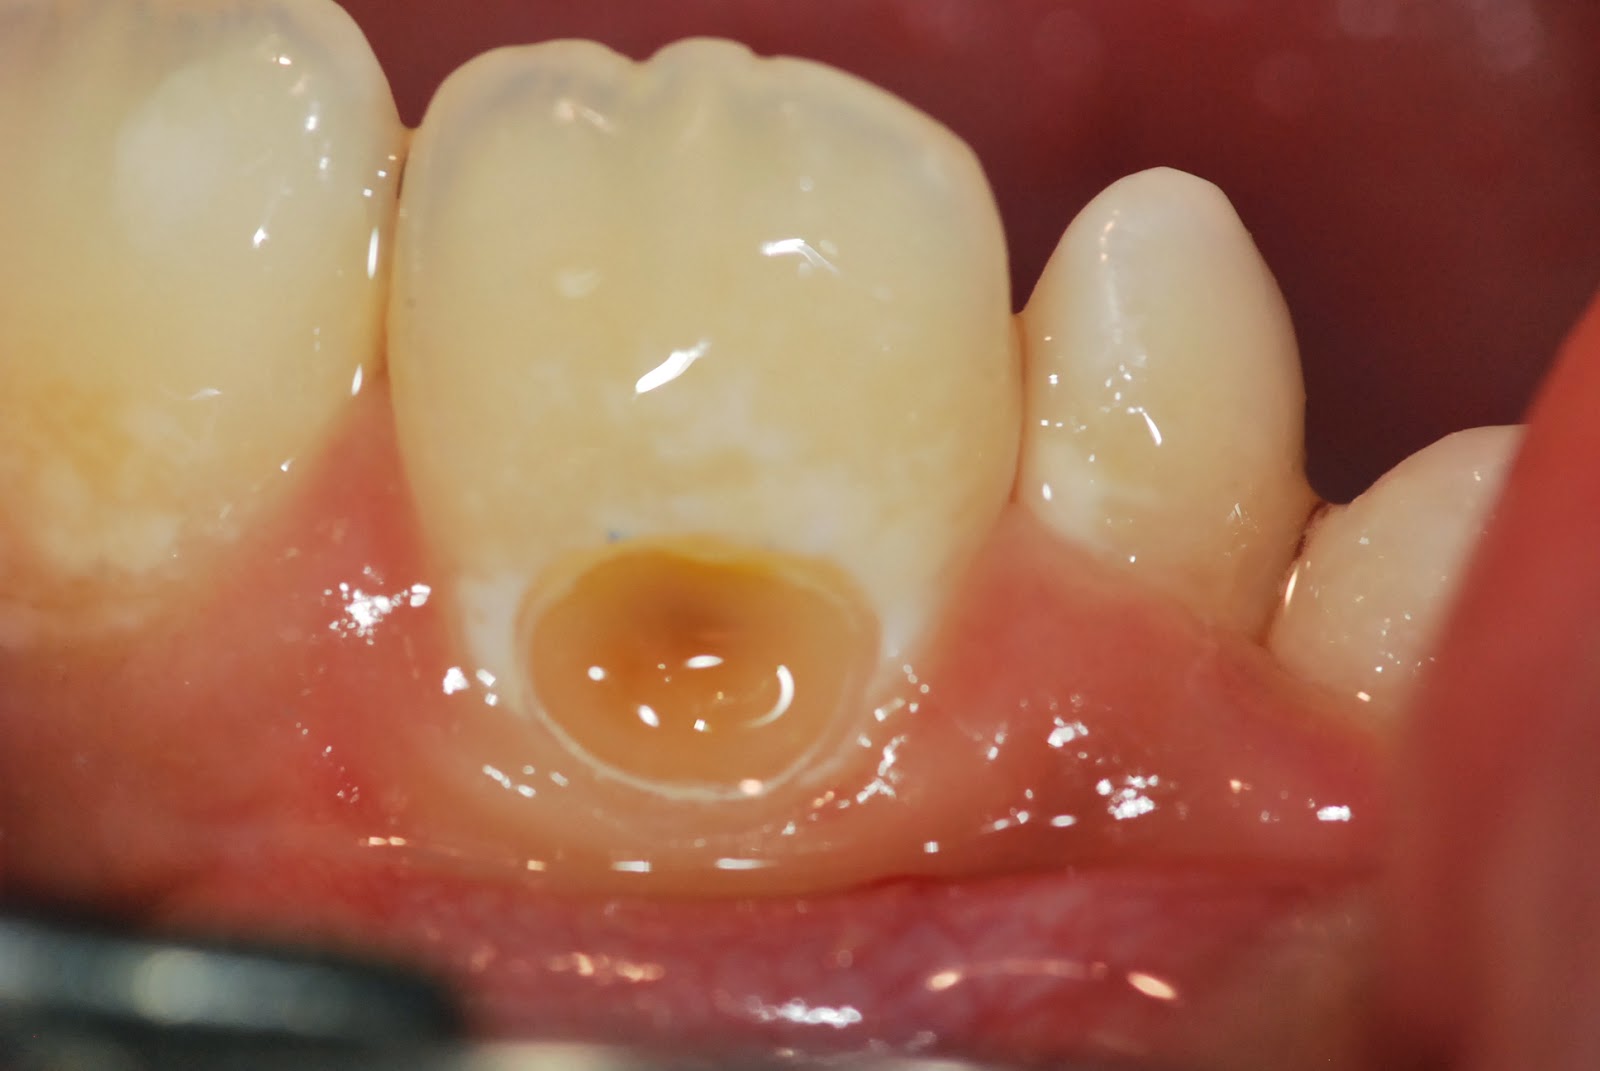 Пример пришеечного кариеса зуба